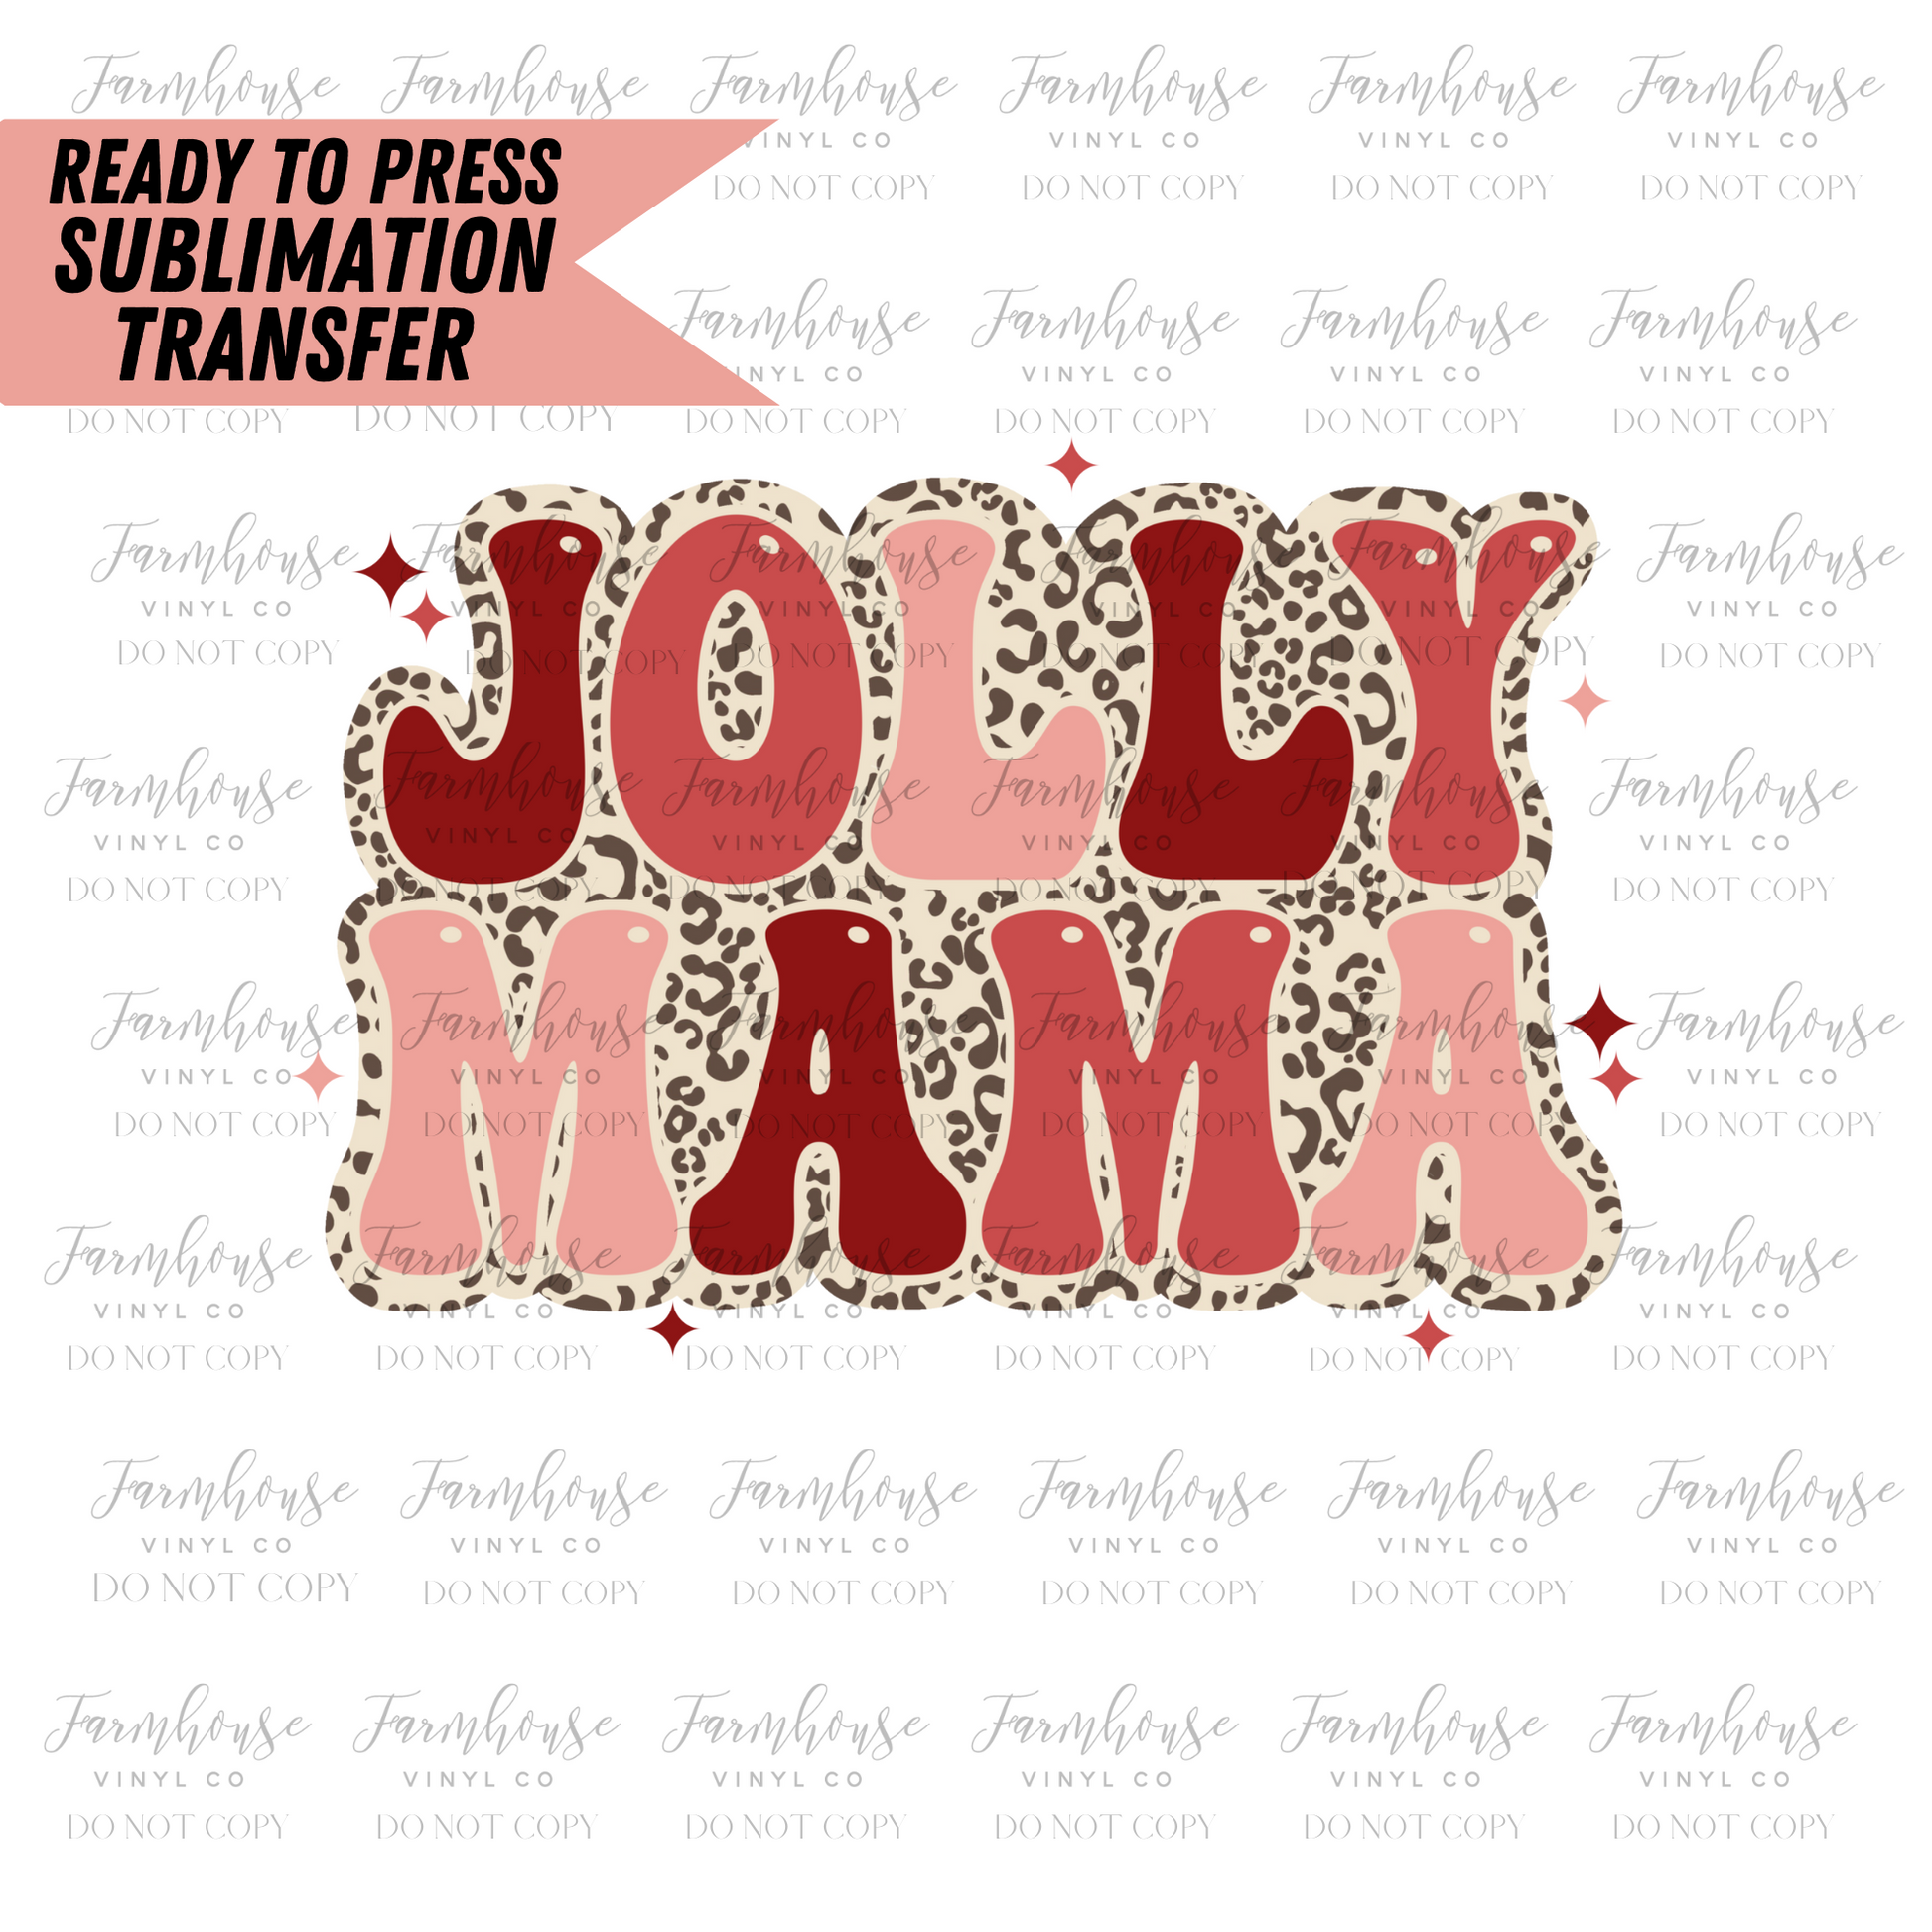 Jolly Mama Ready To Press Sublimation Transfer - Farmhouse Vinyl Co